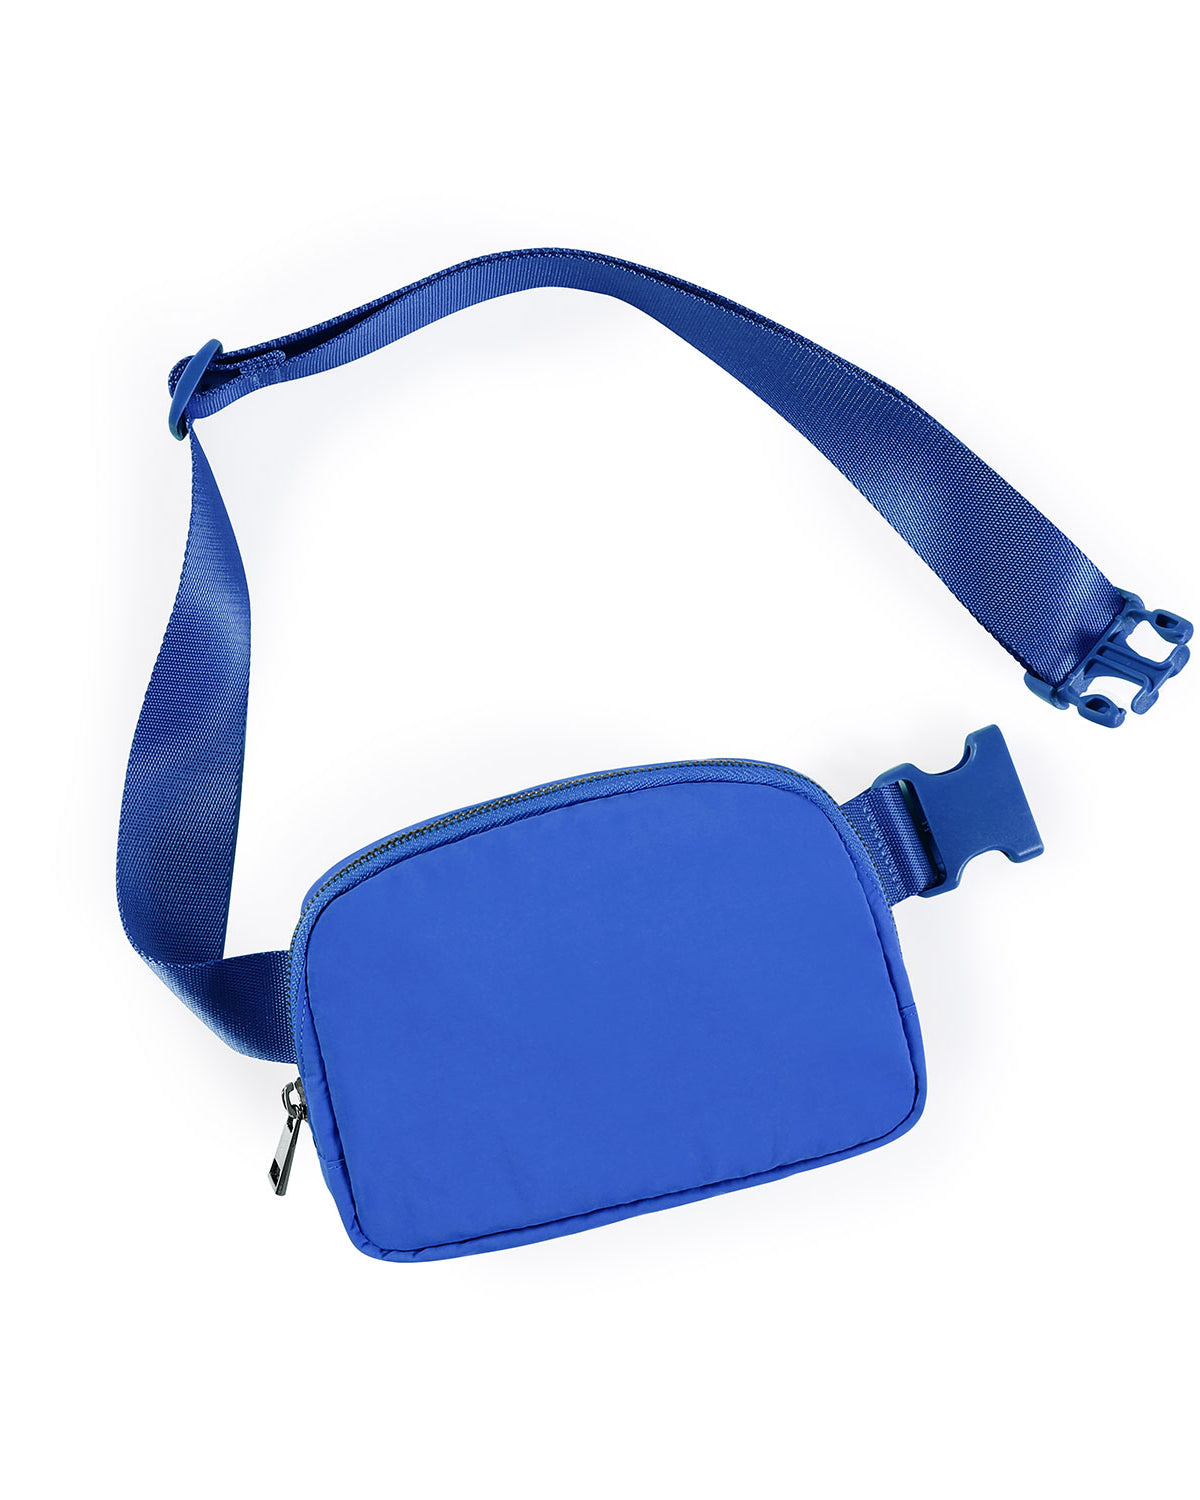 Unisex Mini Belt Bag Wild Blue 8" x 2" x 5.5" - ododos